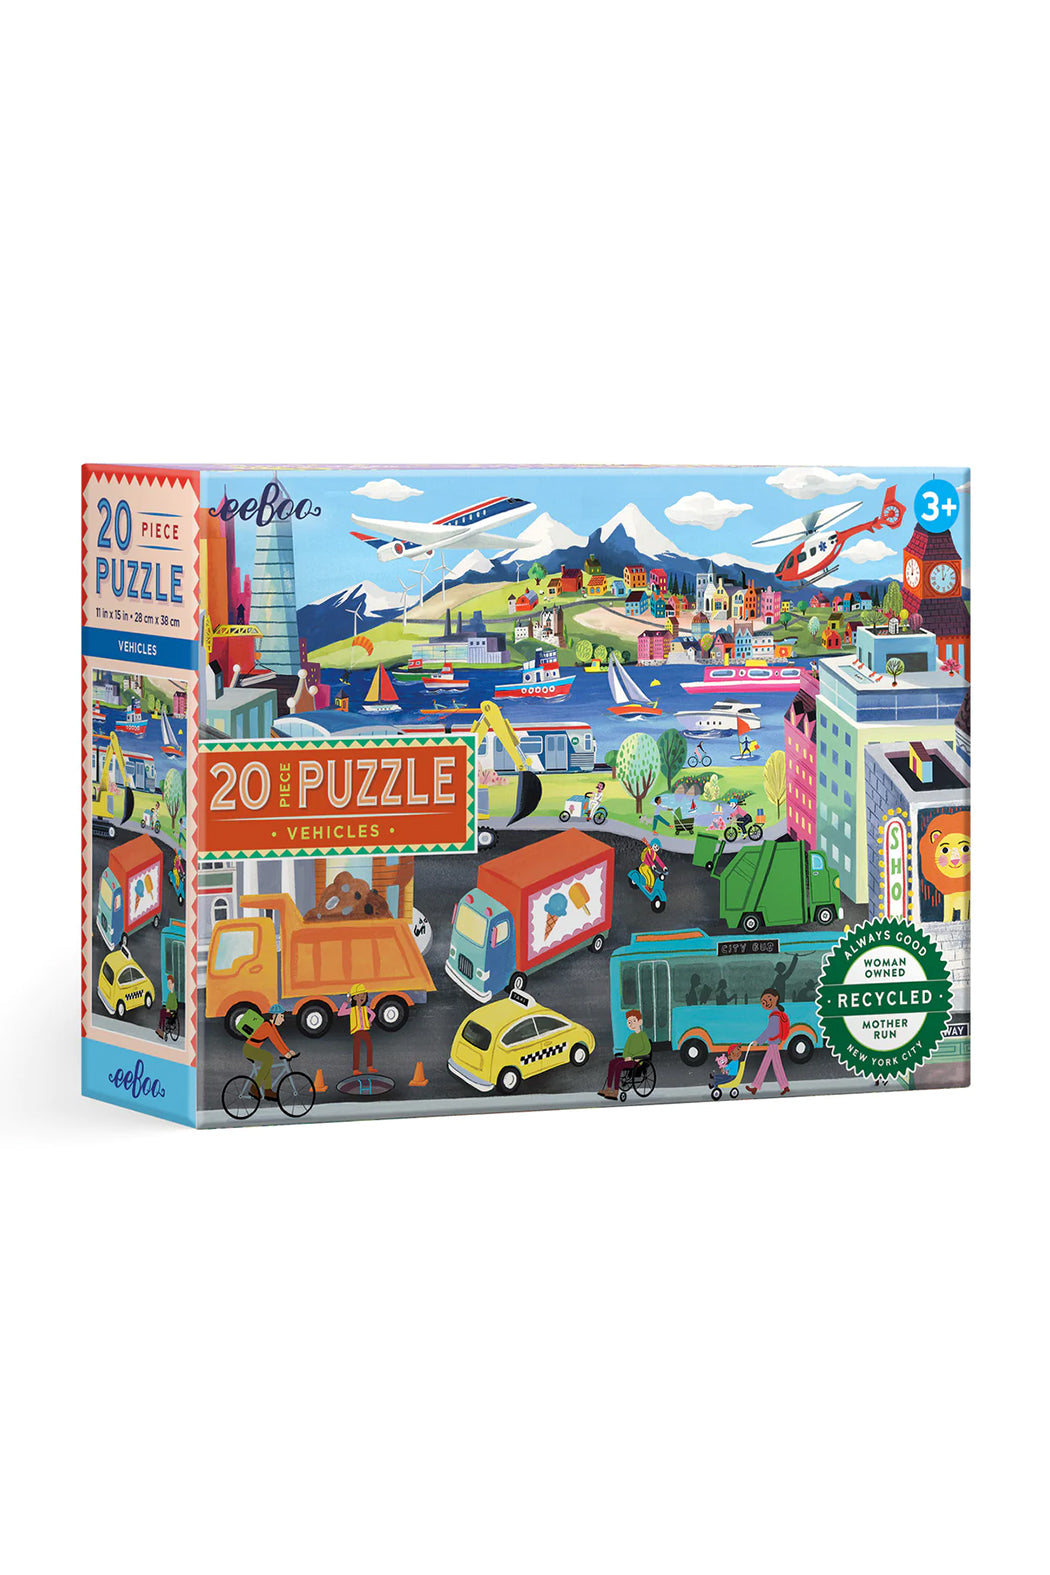 Eeboo Vehicles 20 Piece Puzzle